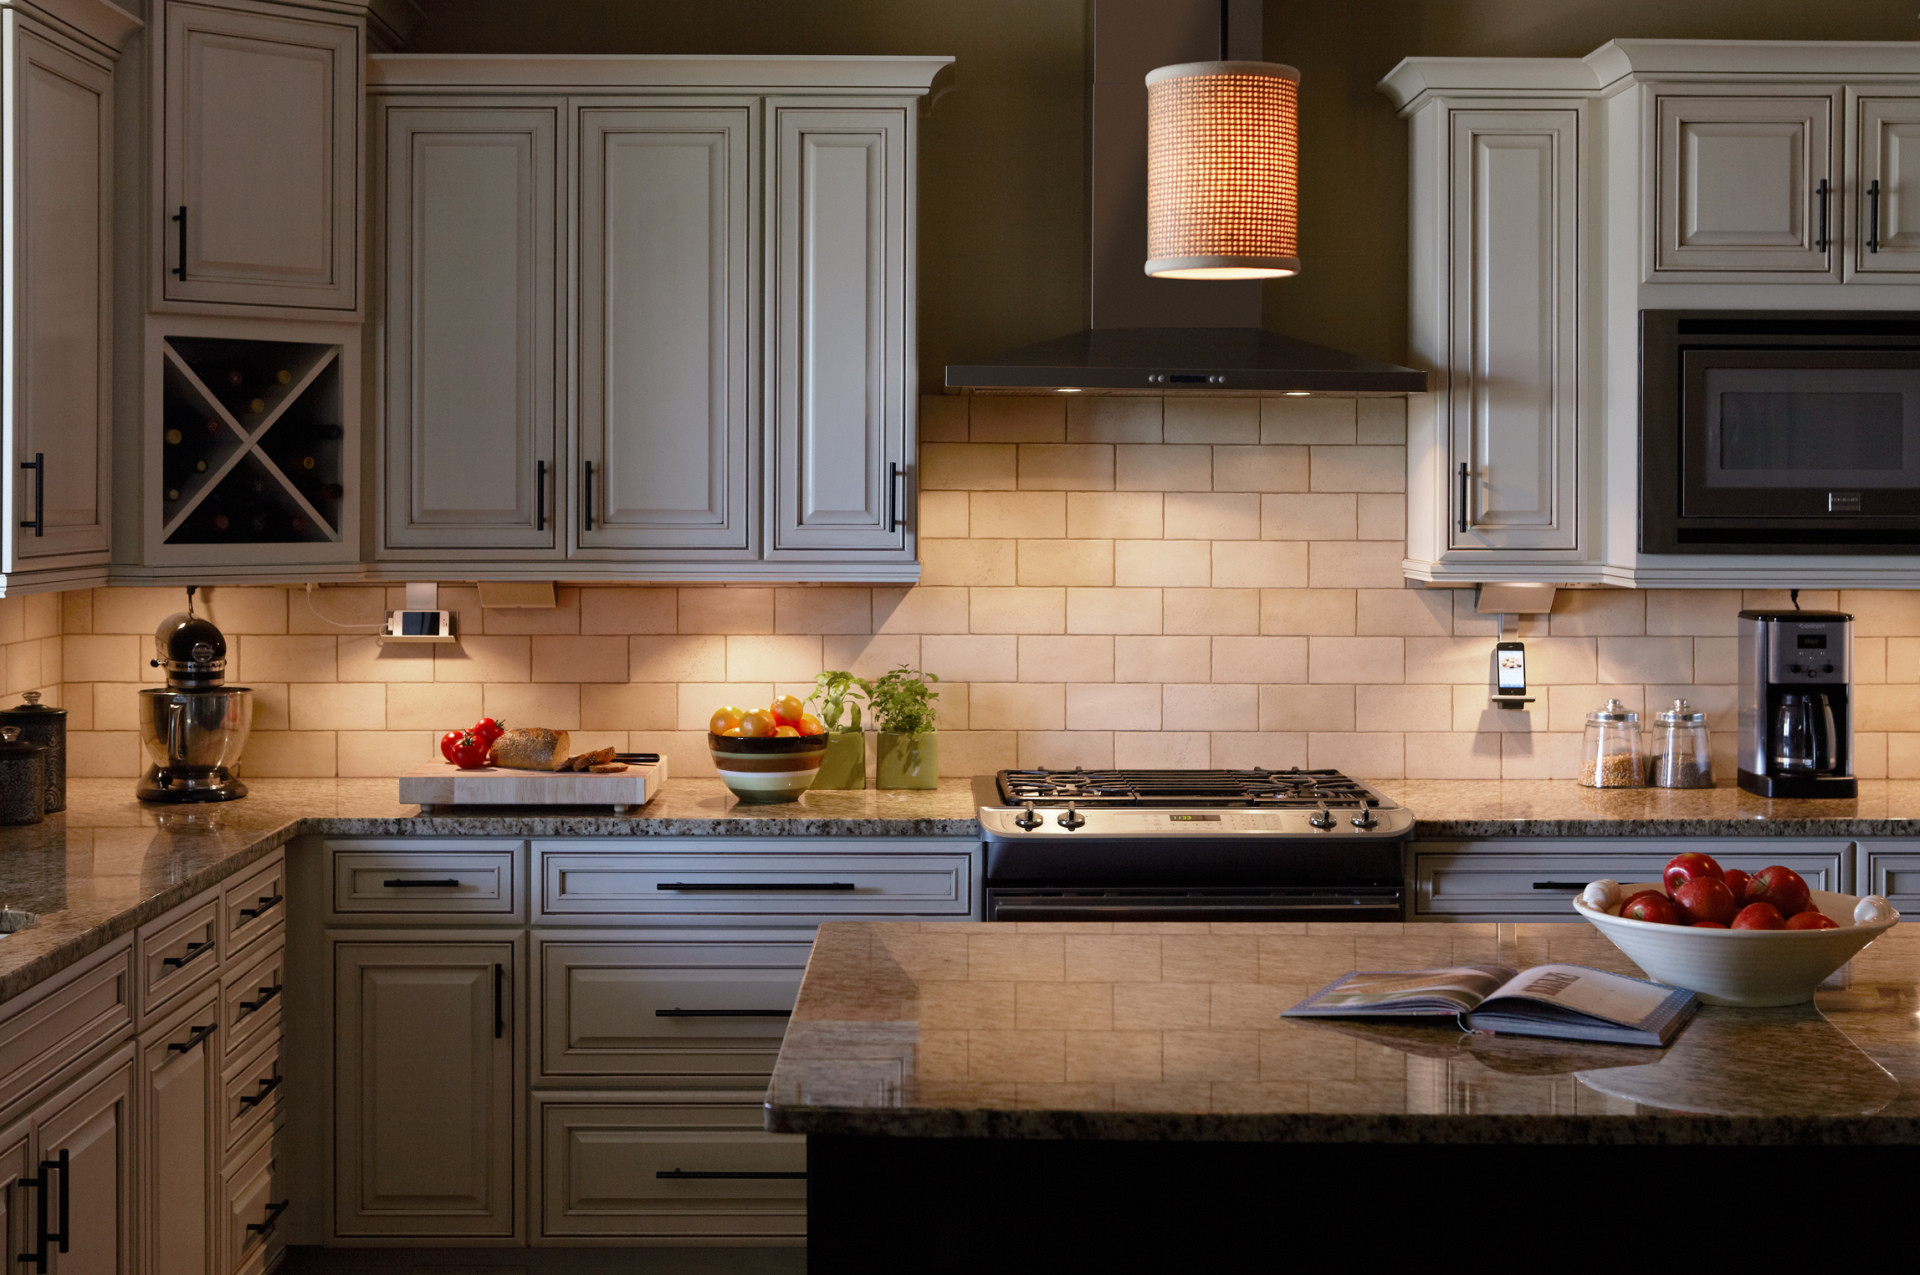 Best Light Bulbs For Kitchen
 Kitchen Lighting Trends LEDs – Loretta J Willis DESIGNER